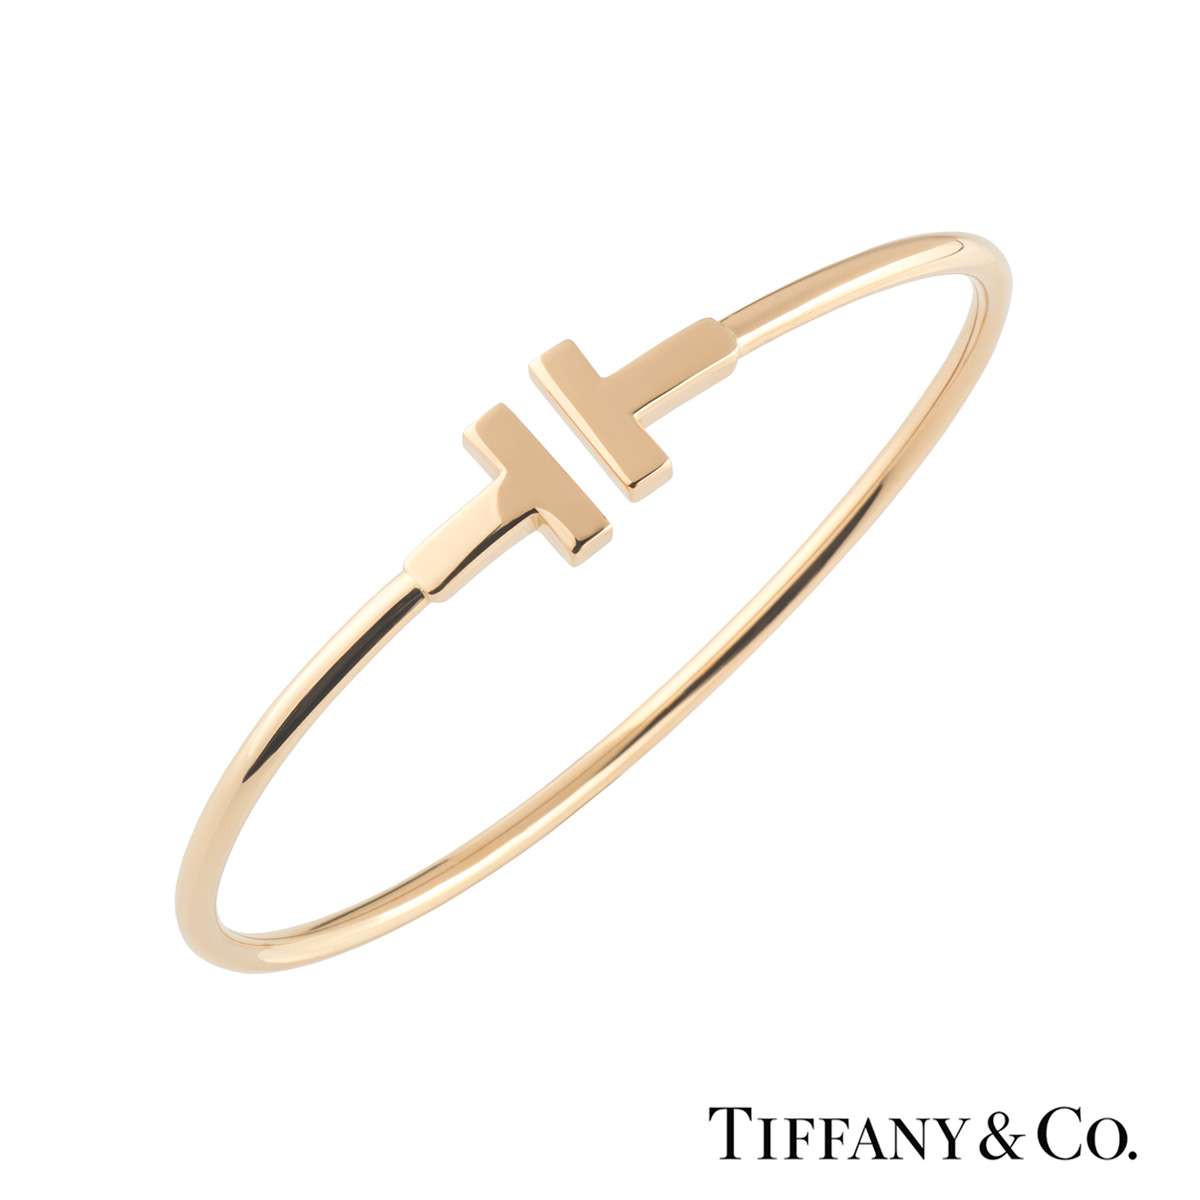 tiffany & co t wire bracelet